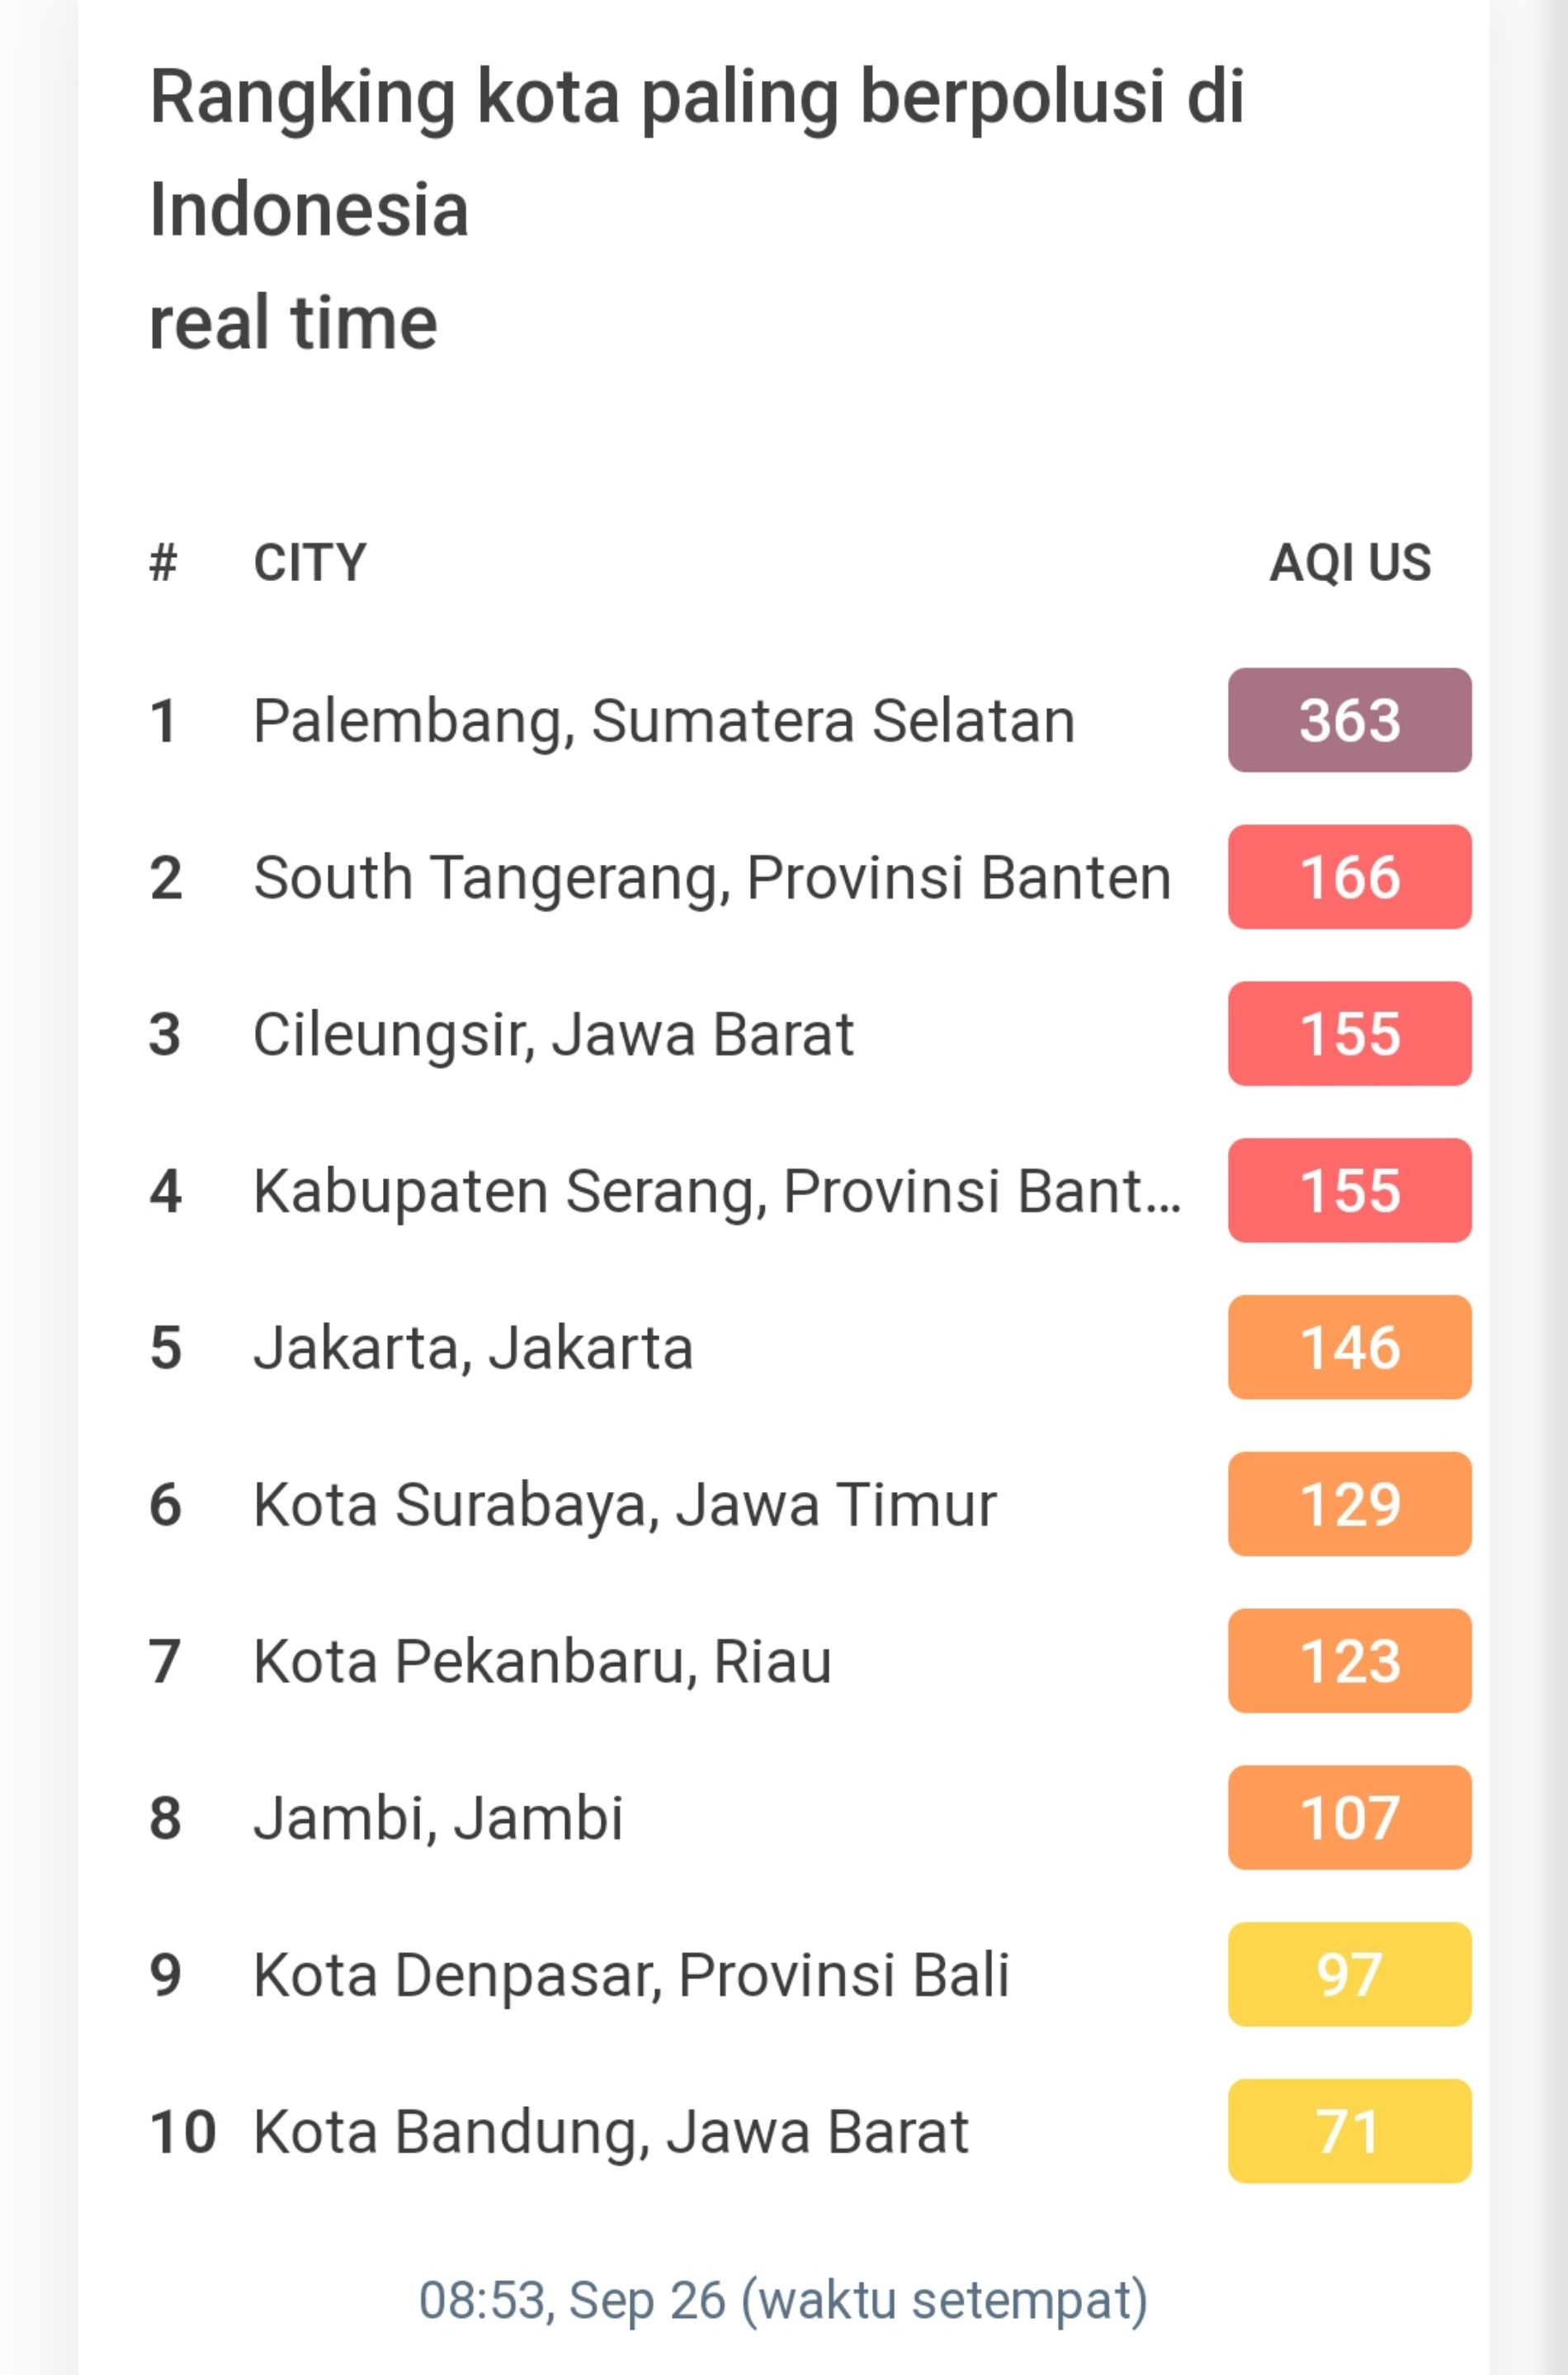 Rangking kota paling berpolusi di Indonesia.